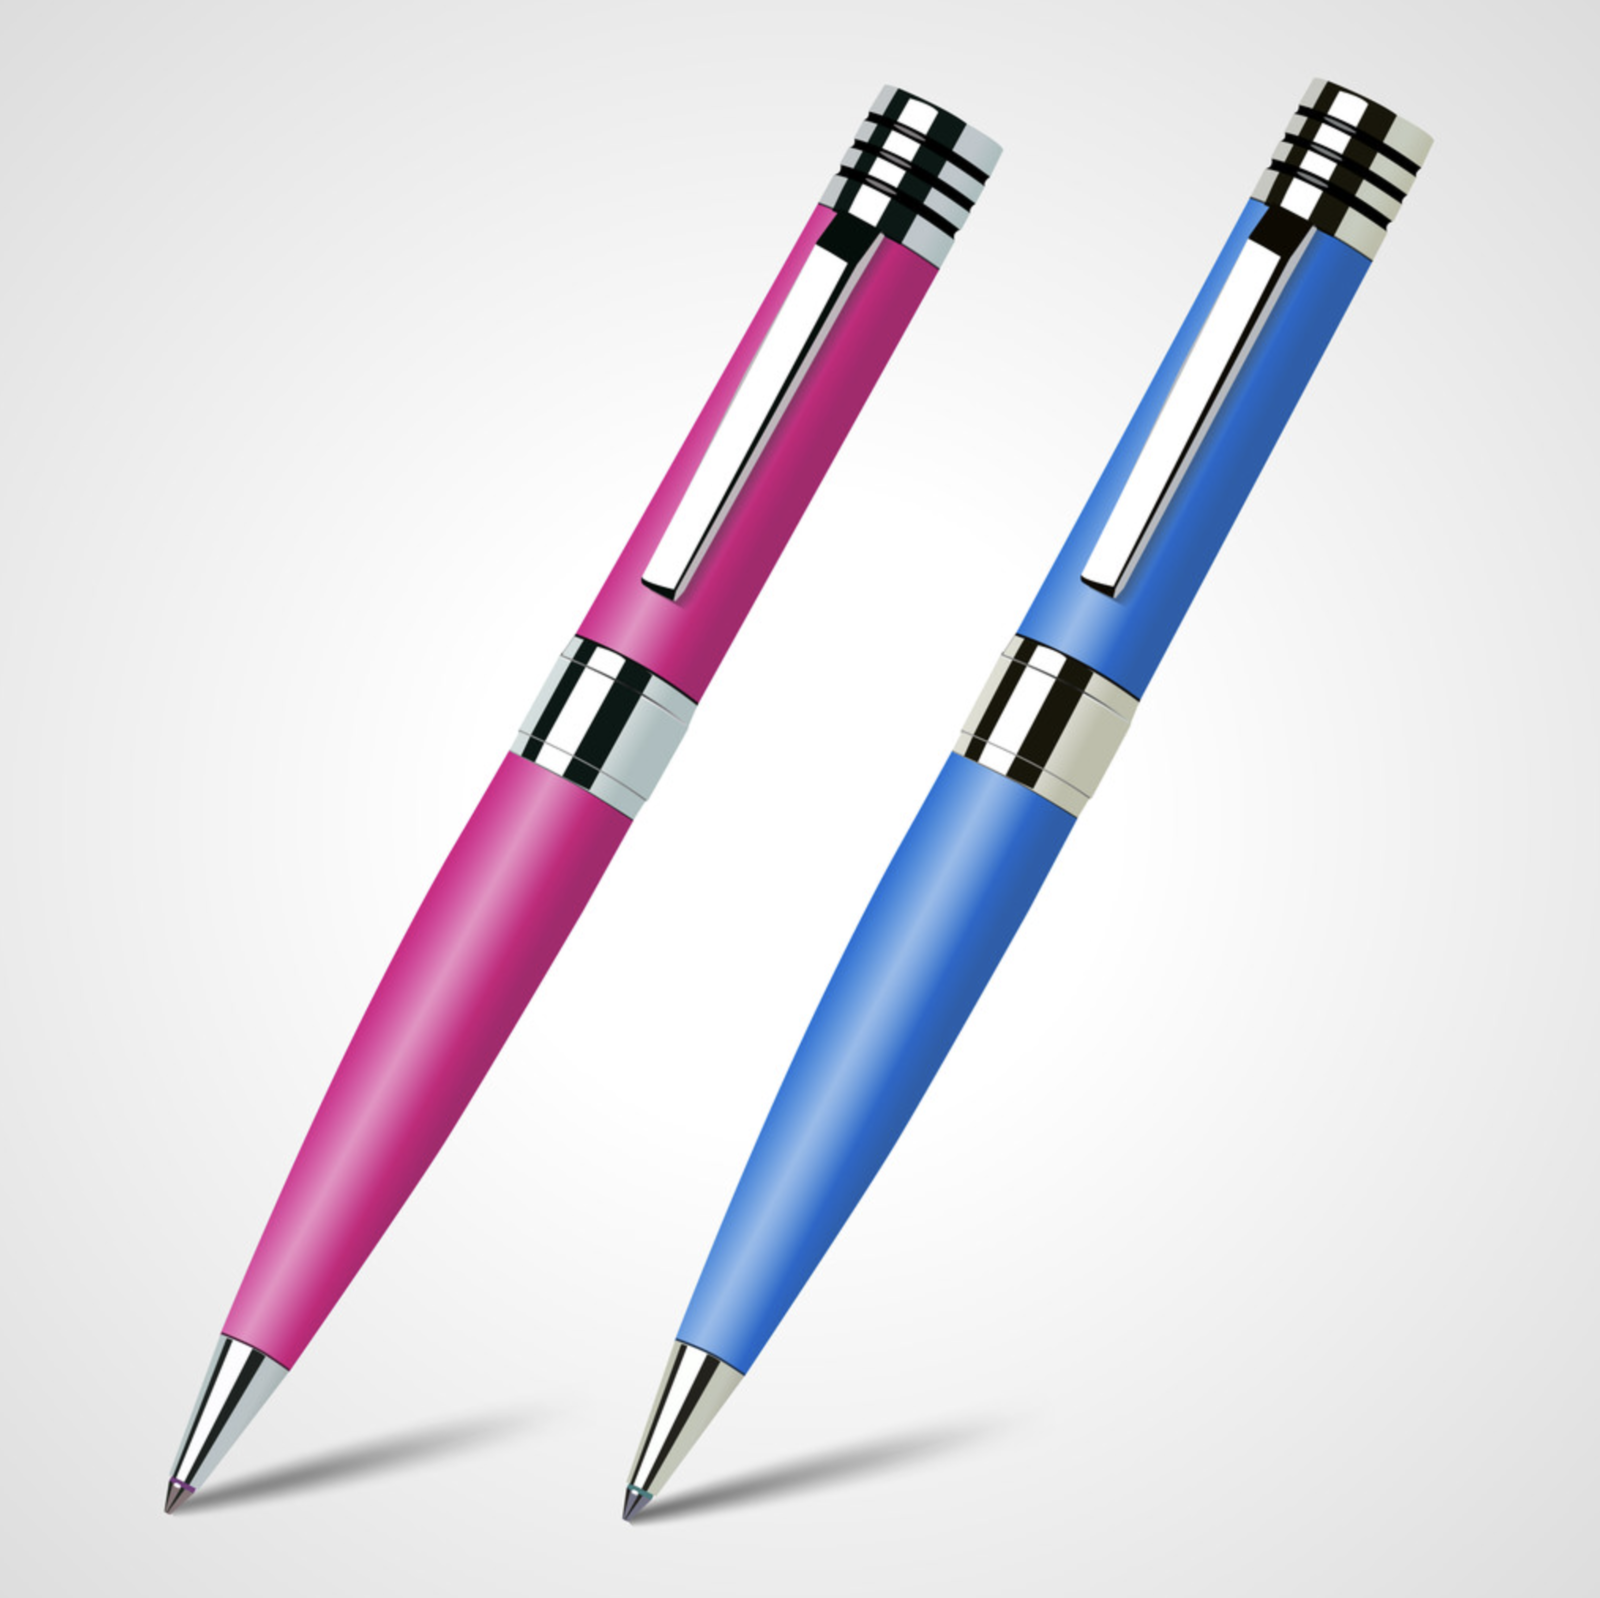 Two pen